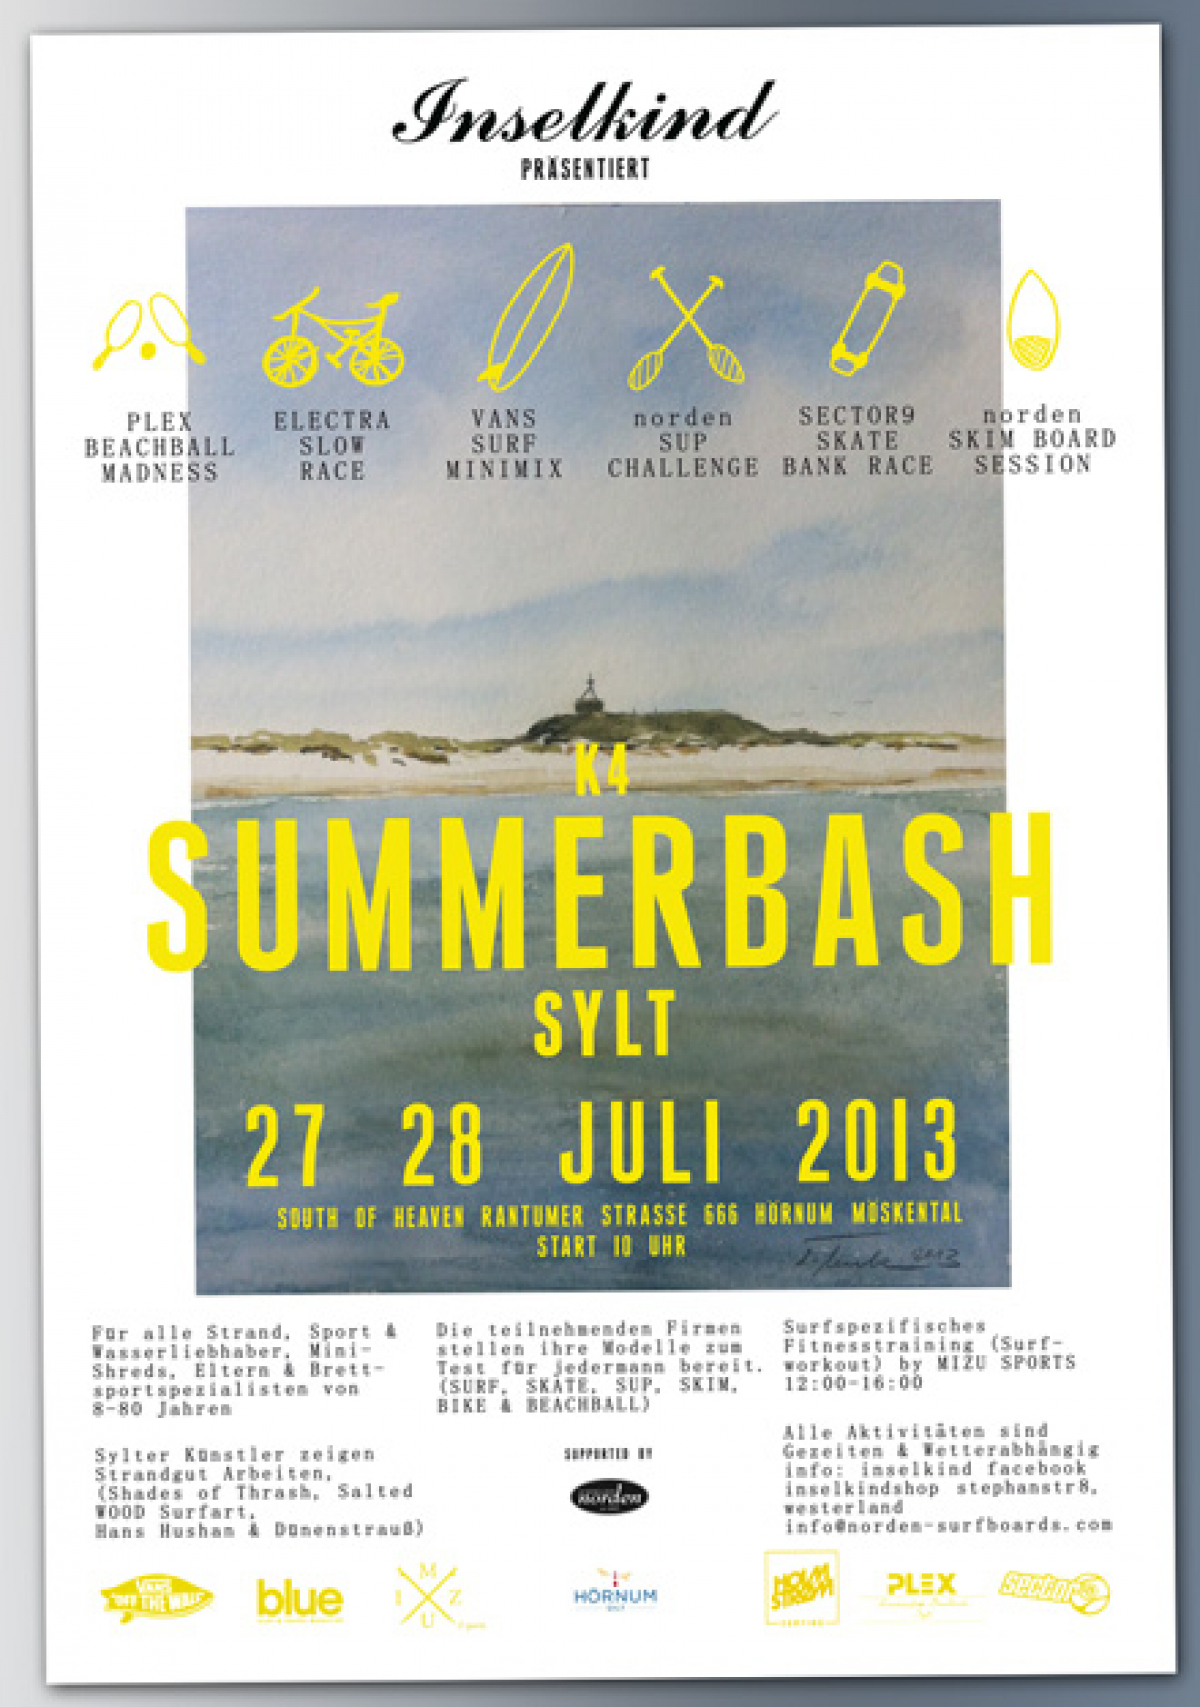 Summer Bash - in Hörnum auf Sylt